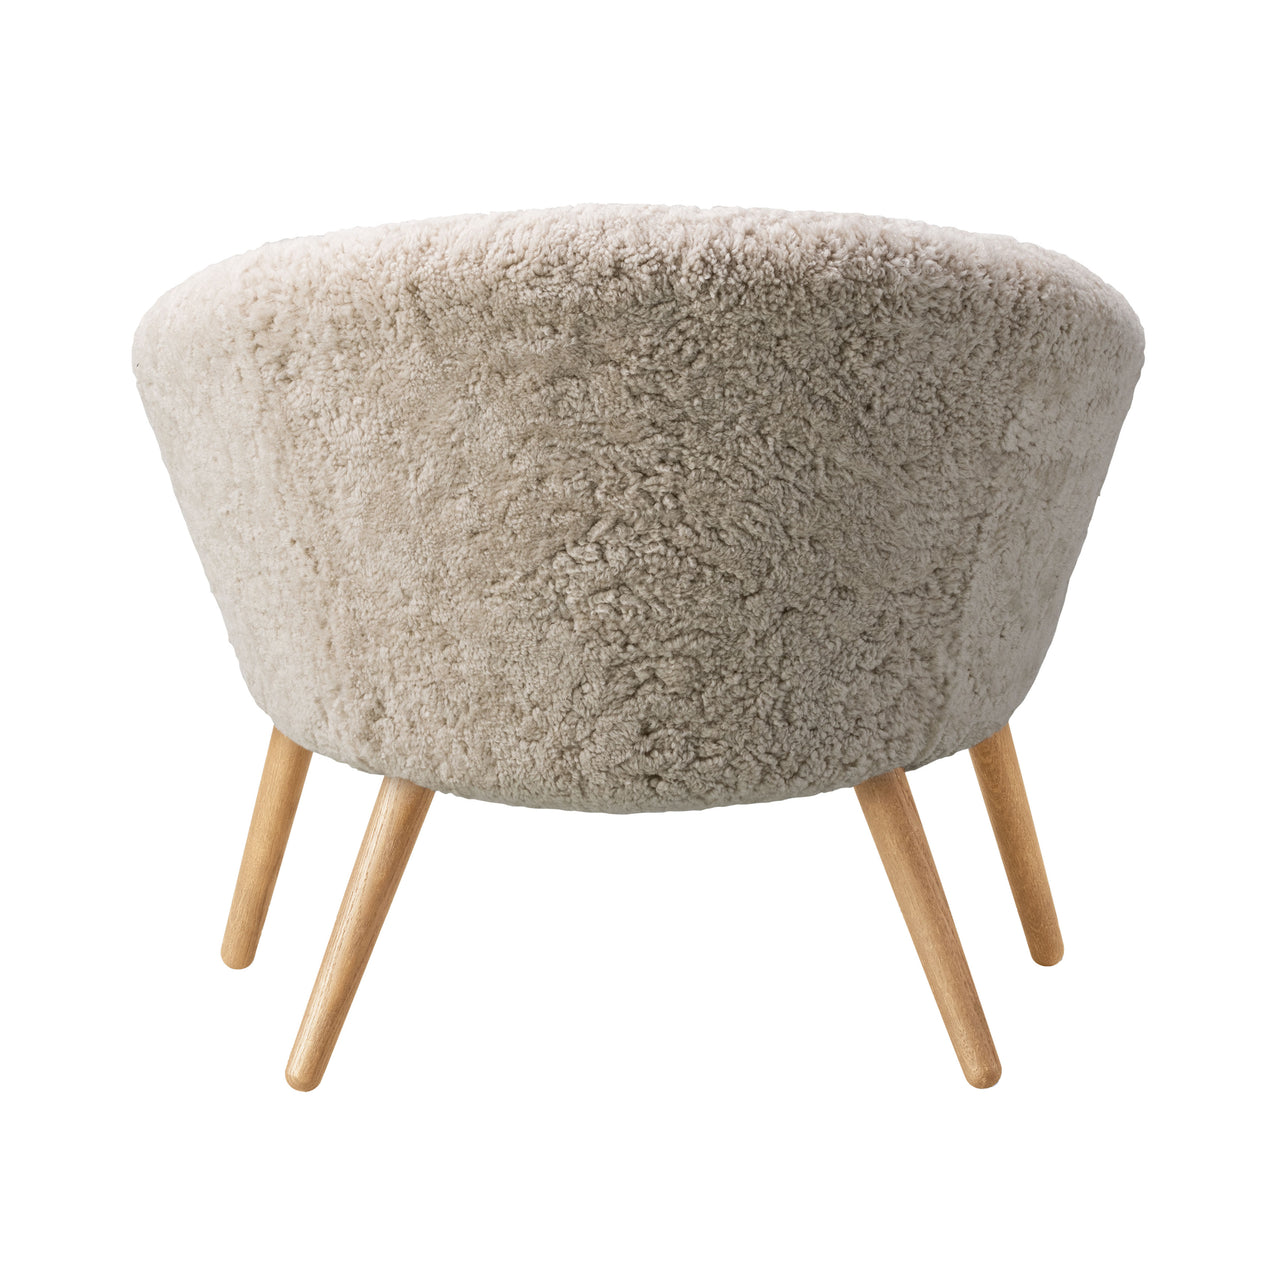 Ditzel Lounge Chair: Sheepskin + Oiled Oak